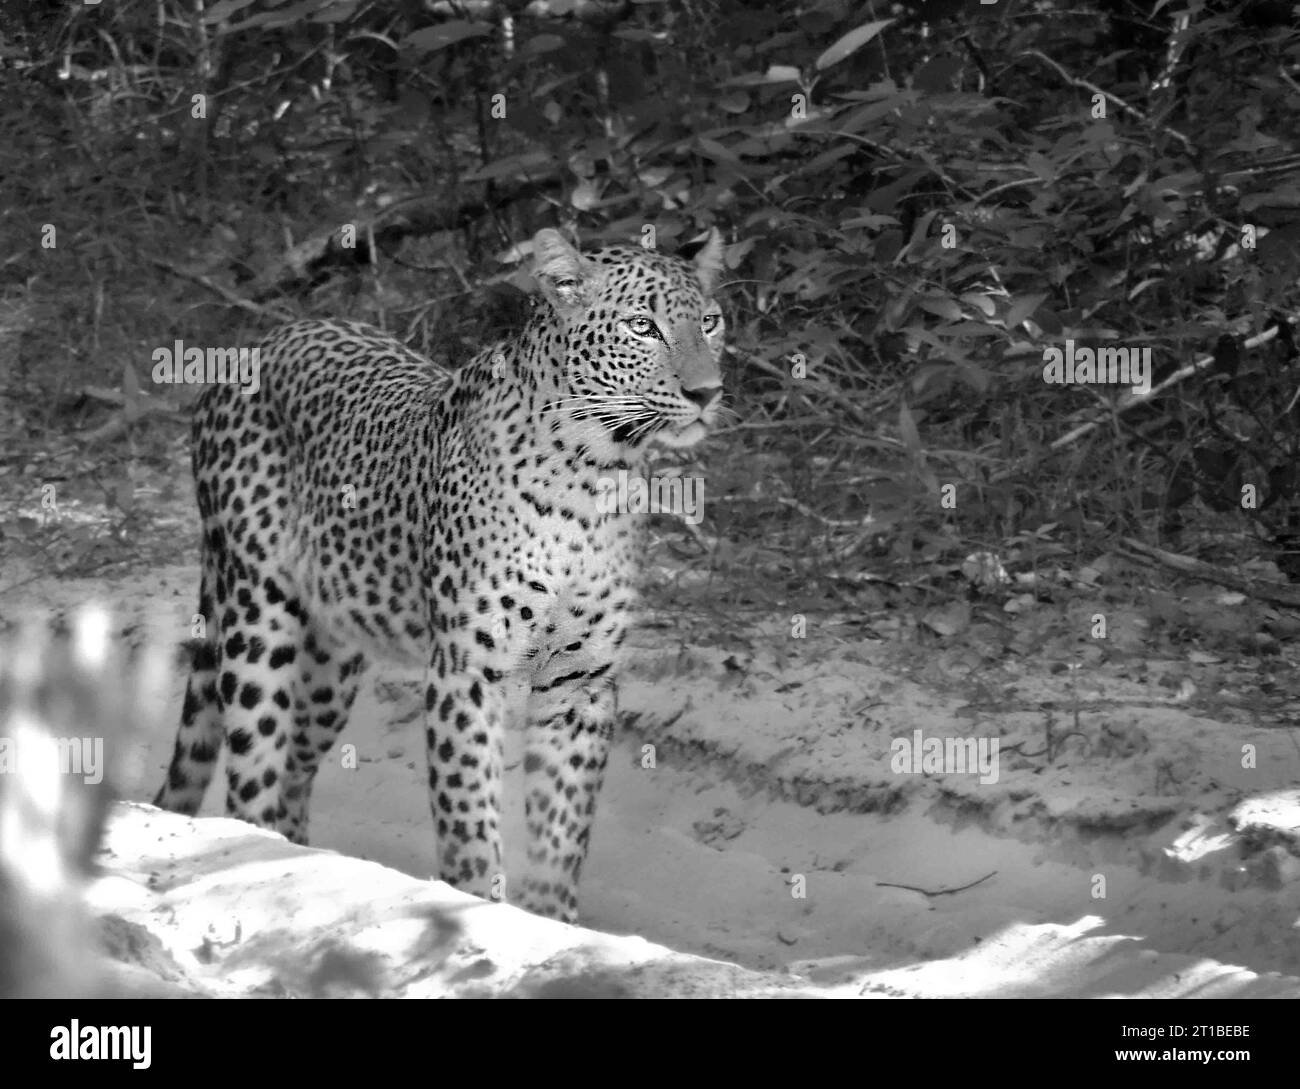 Sri Lankan Leopards on the Wild, Visit Sri Lanka Stock Photo